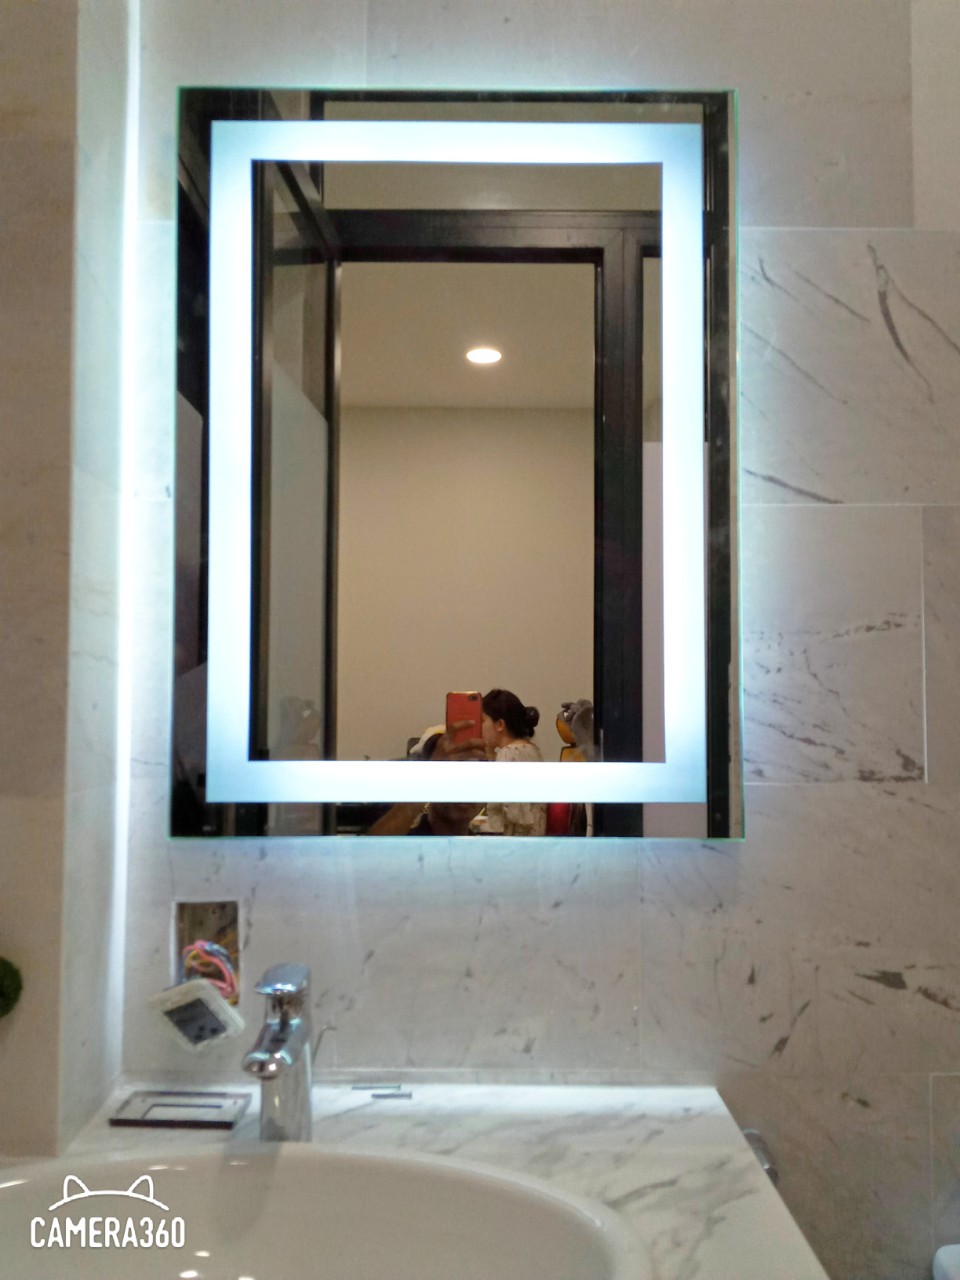 Sinh ra để phục vụ cho sự hoàn hảo của không gian tắm của bạn, gương đèn LED hắt trong cho phép bạn quan sát mặt mình trong ánh sáng tự nhiên. Kết hợp với thiết kế đơn giản và hiện đại, sản phẩm này đúng là một lựa chọn tuyệt vời để cải thiện không gian phòng tắm của bạn.